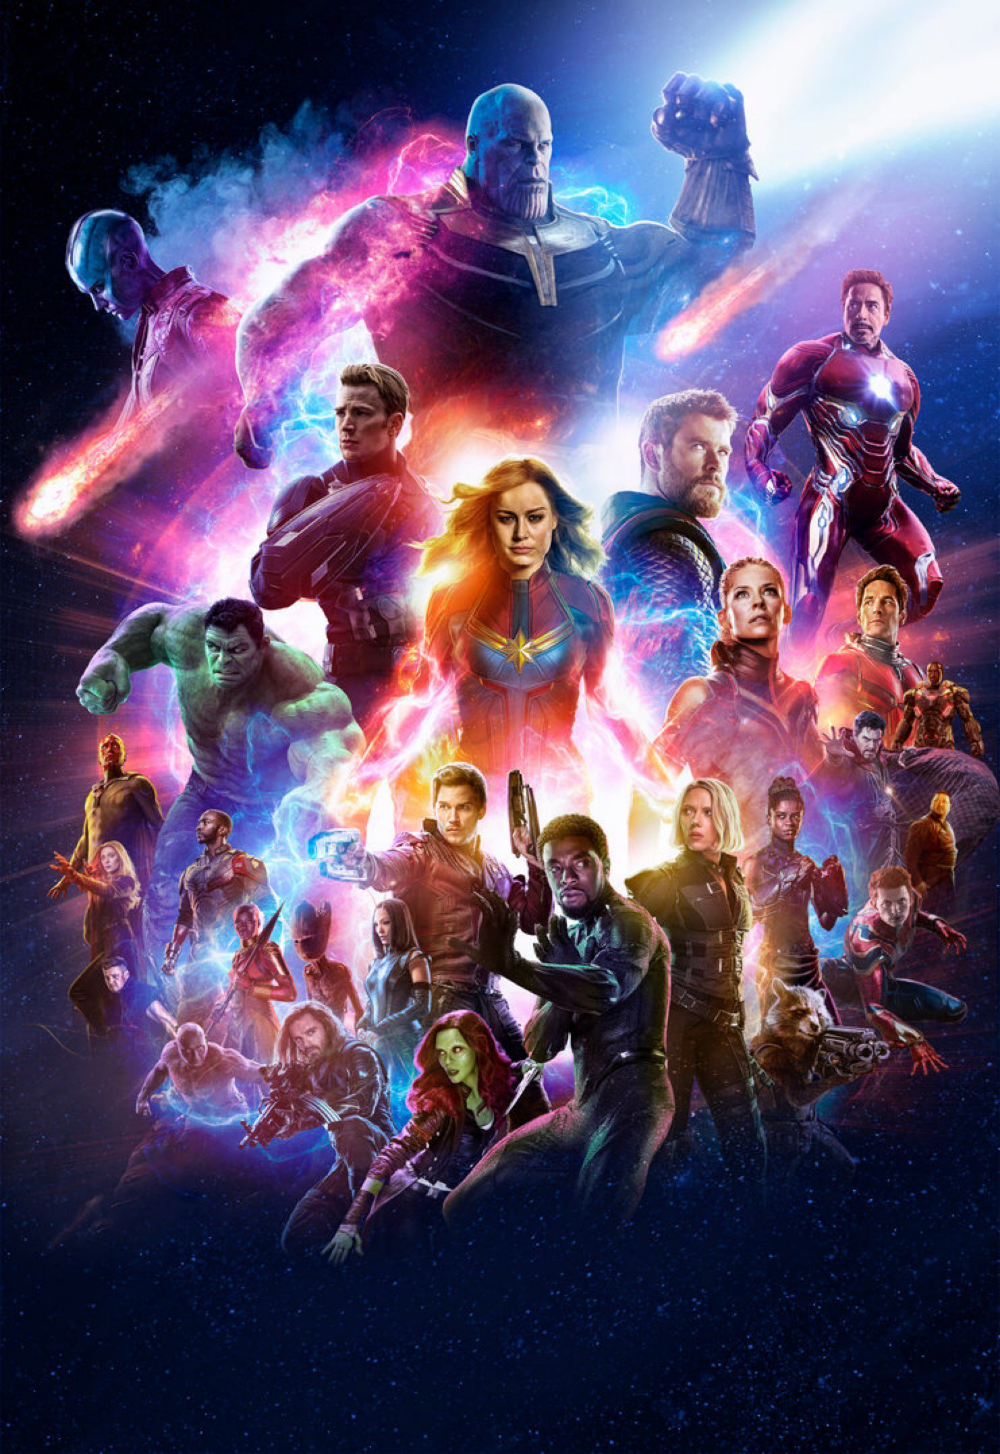 Avengers Endgame Wallpaper. Marvel avengers, Avengers picture, Avengers